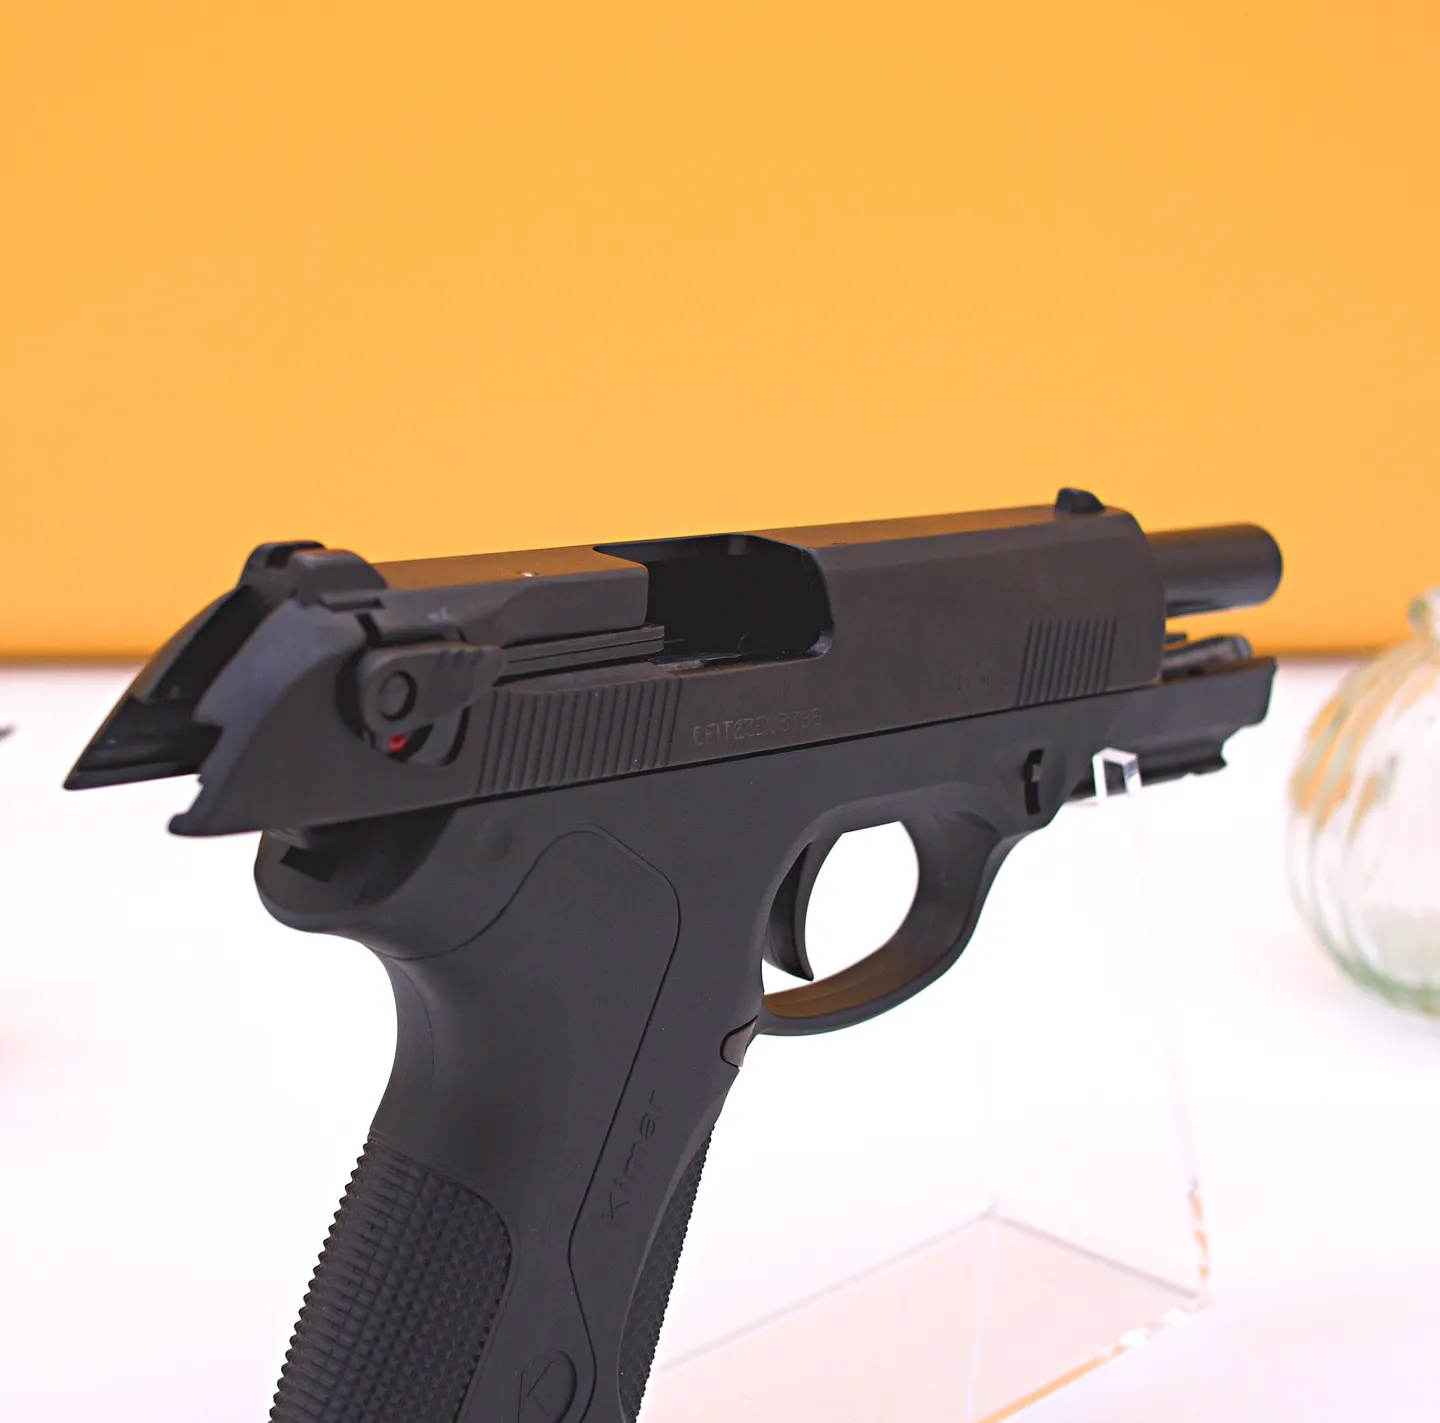 Pistolet d'alarme et de défense - Pistolet d'alarme de défense PK4 Kimar 9mm PAK - Style PX4 storm Beretta